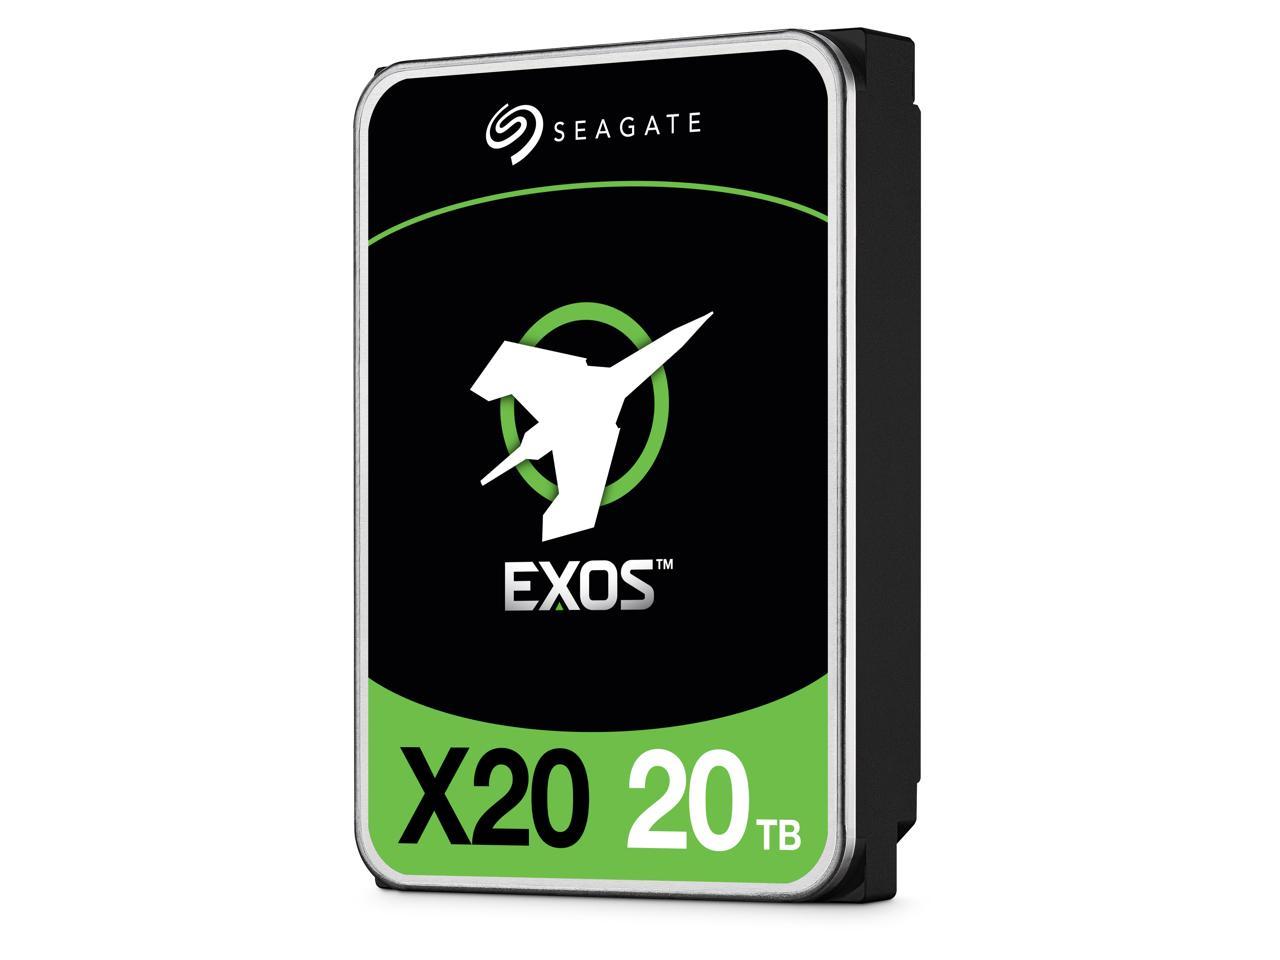 20TB Seagate Exos X20 ST20000NM007D Enterprise Hard Drive $290